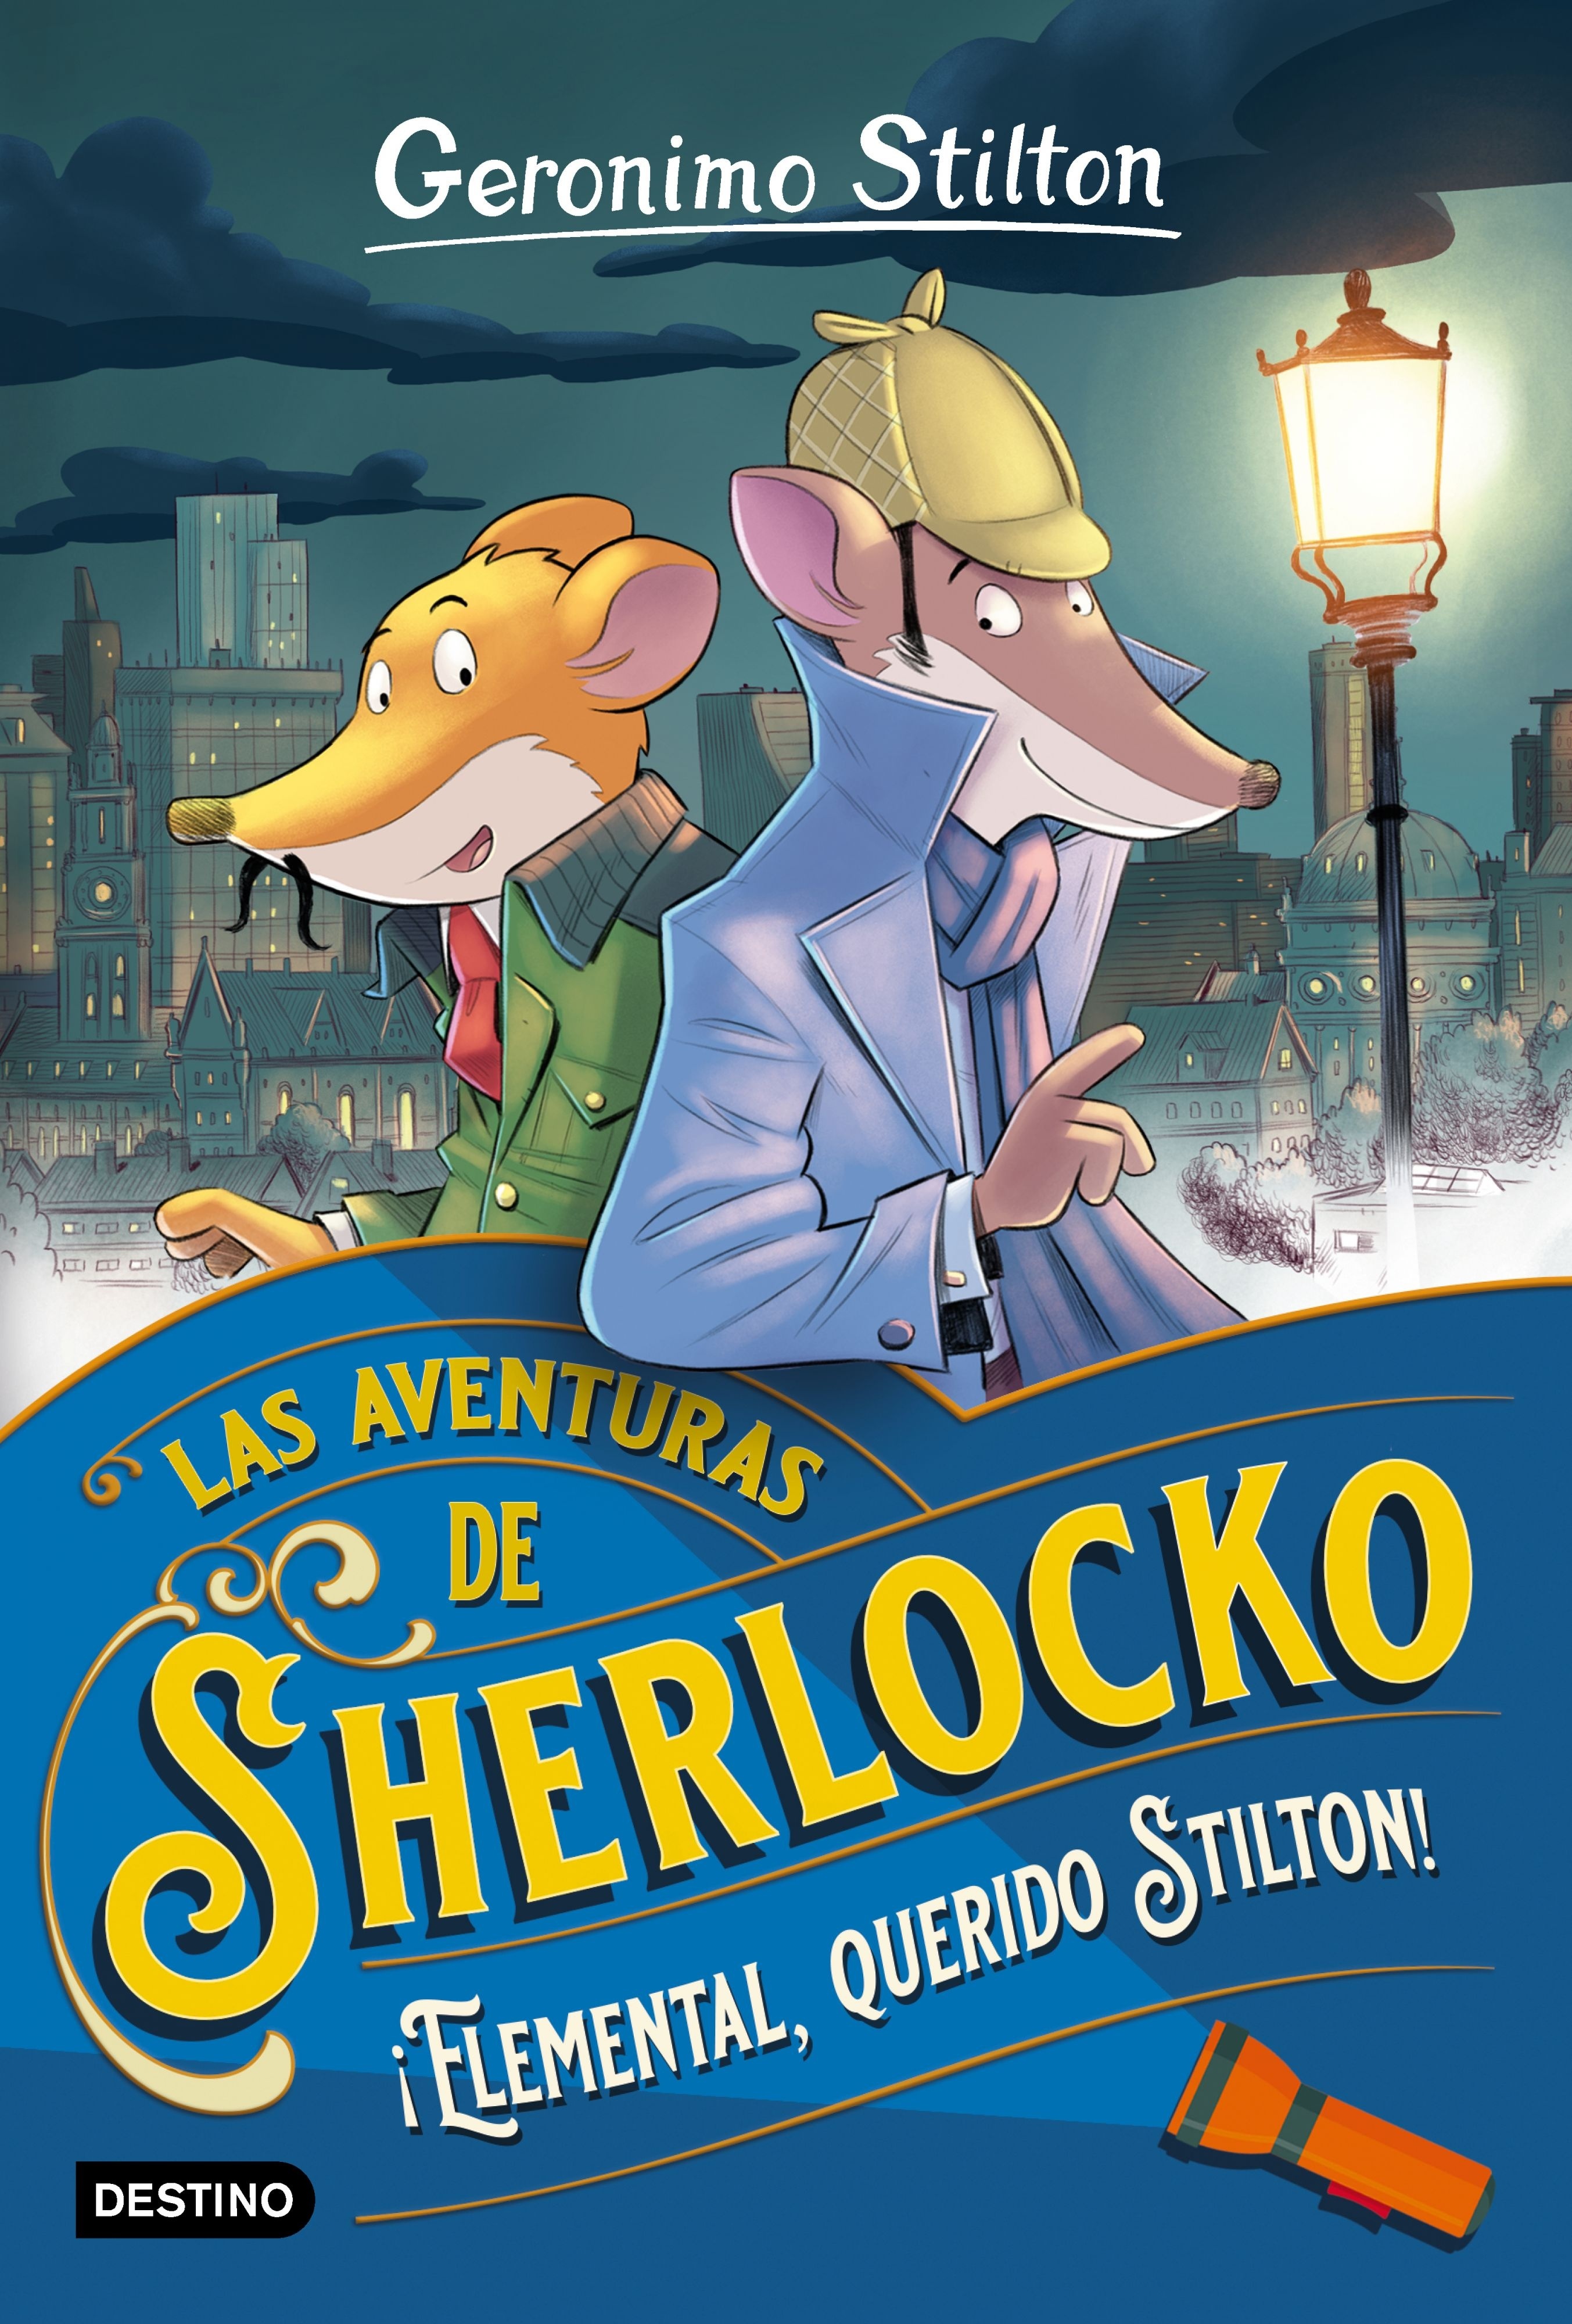 Elemental, querido Stilton! "Las aventuras de Sherlocko"